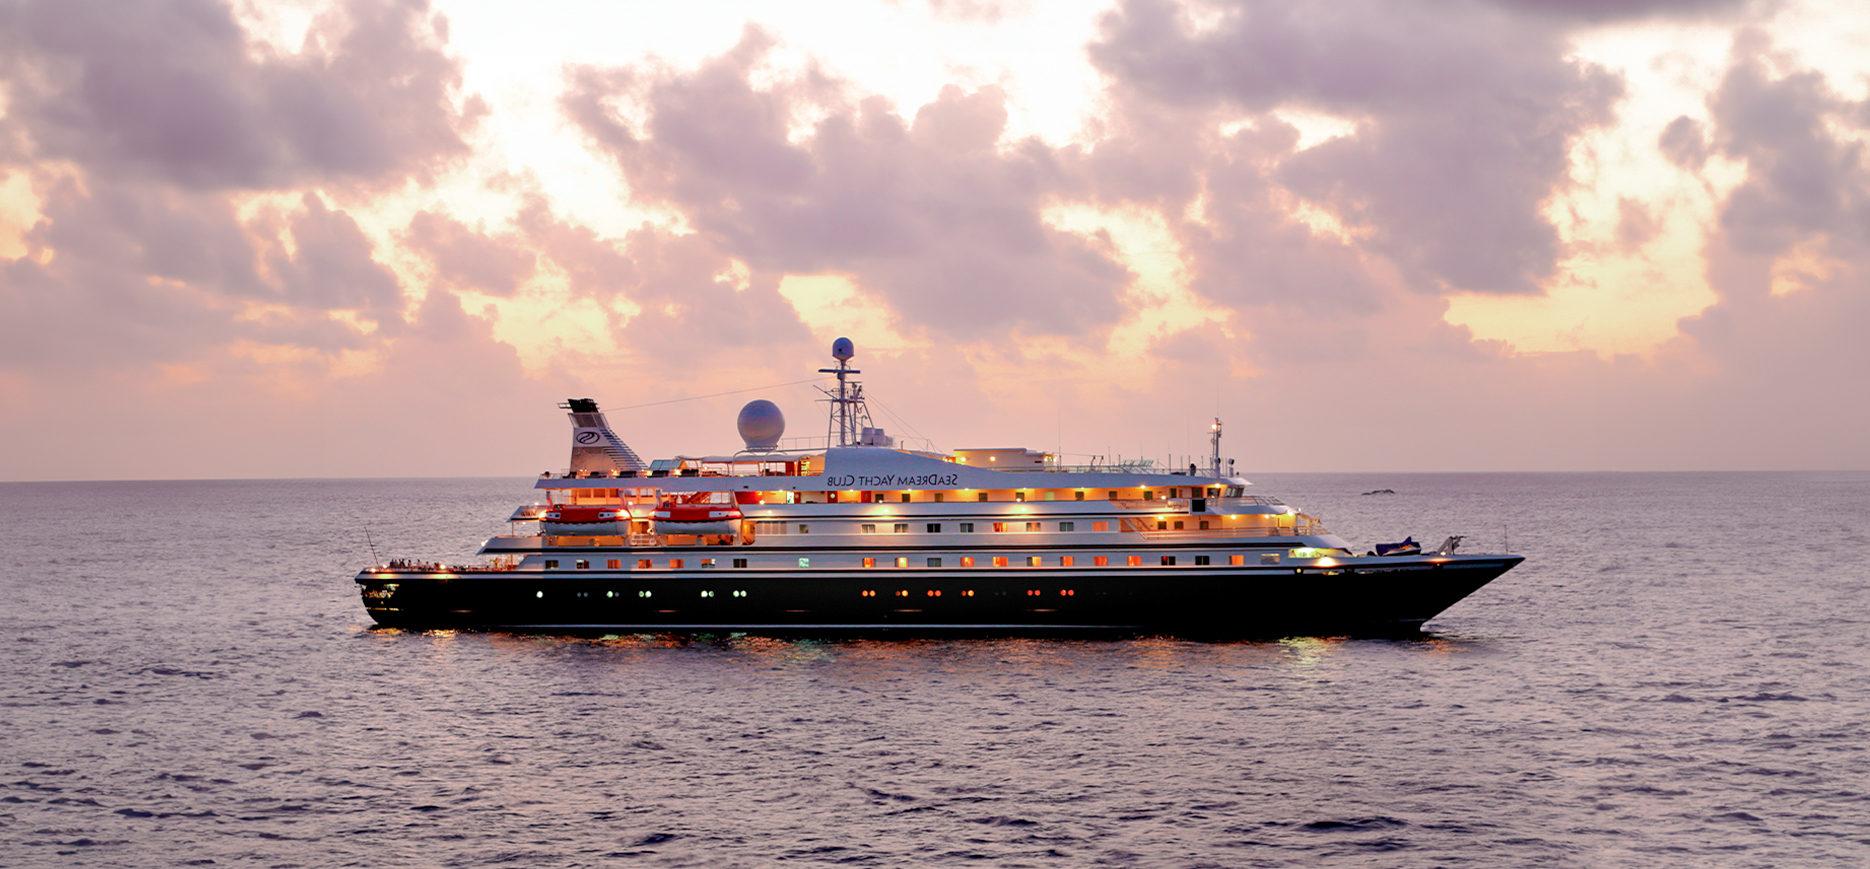 Book Your Luxury Transatlantic Cruise Today